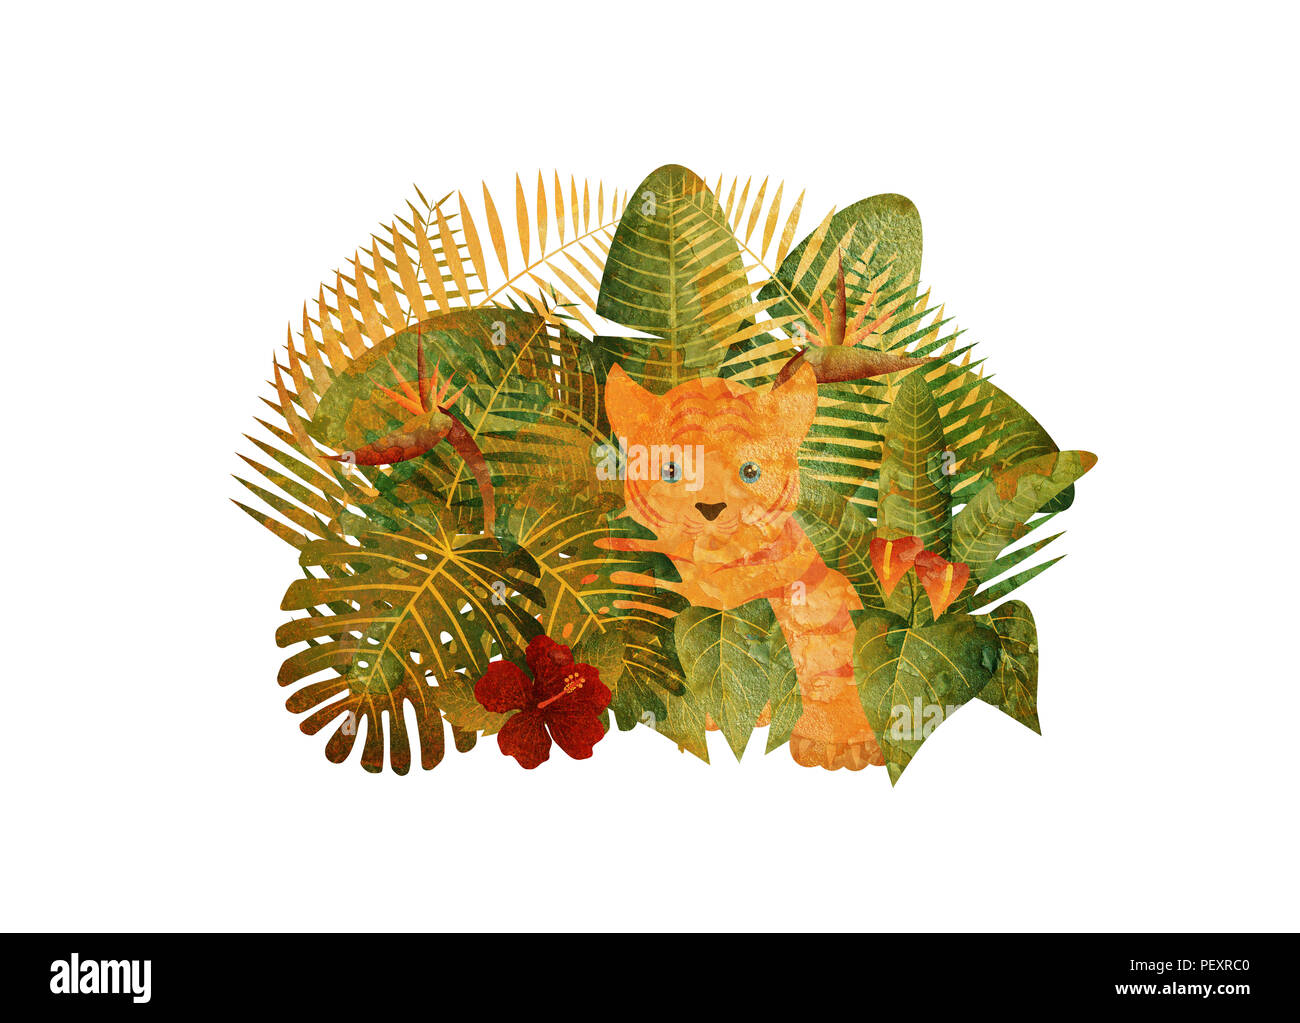 Tropischer Regenwald Dschungel Pflanzen mit Blättern, Blüten und Tiger Cub Grunge Textur isoliert auf weißem Hintergrund Farbe Abbildung: Stockfoto